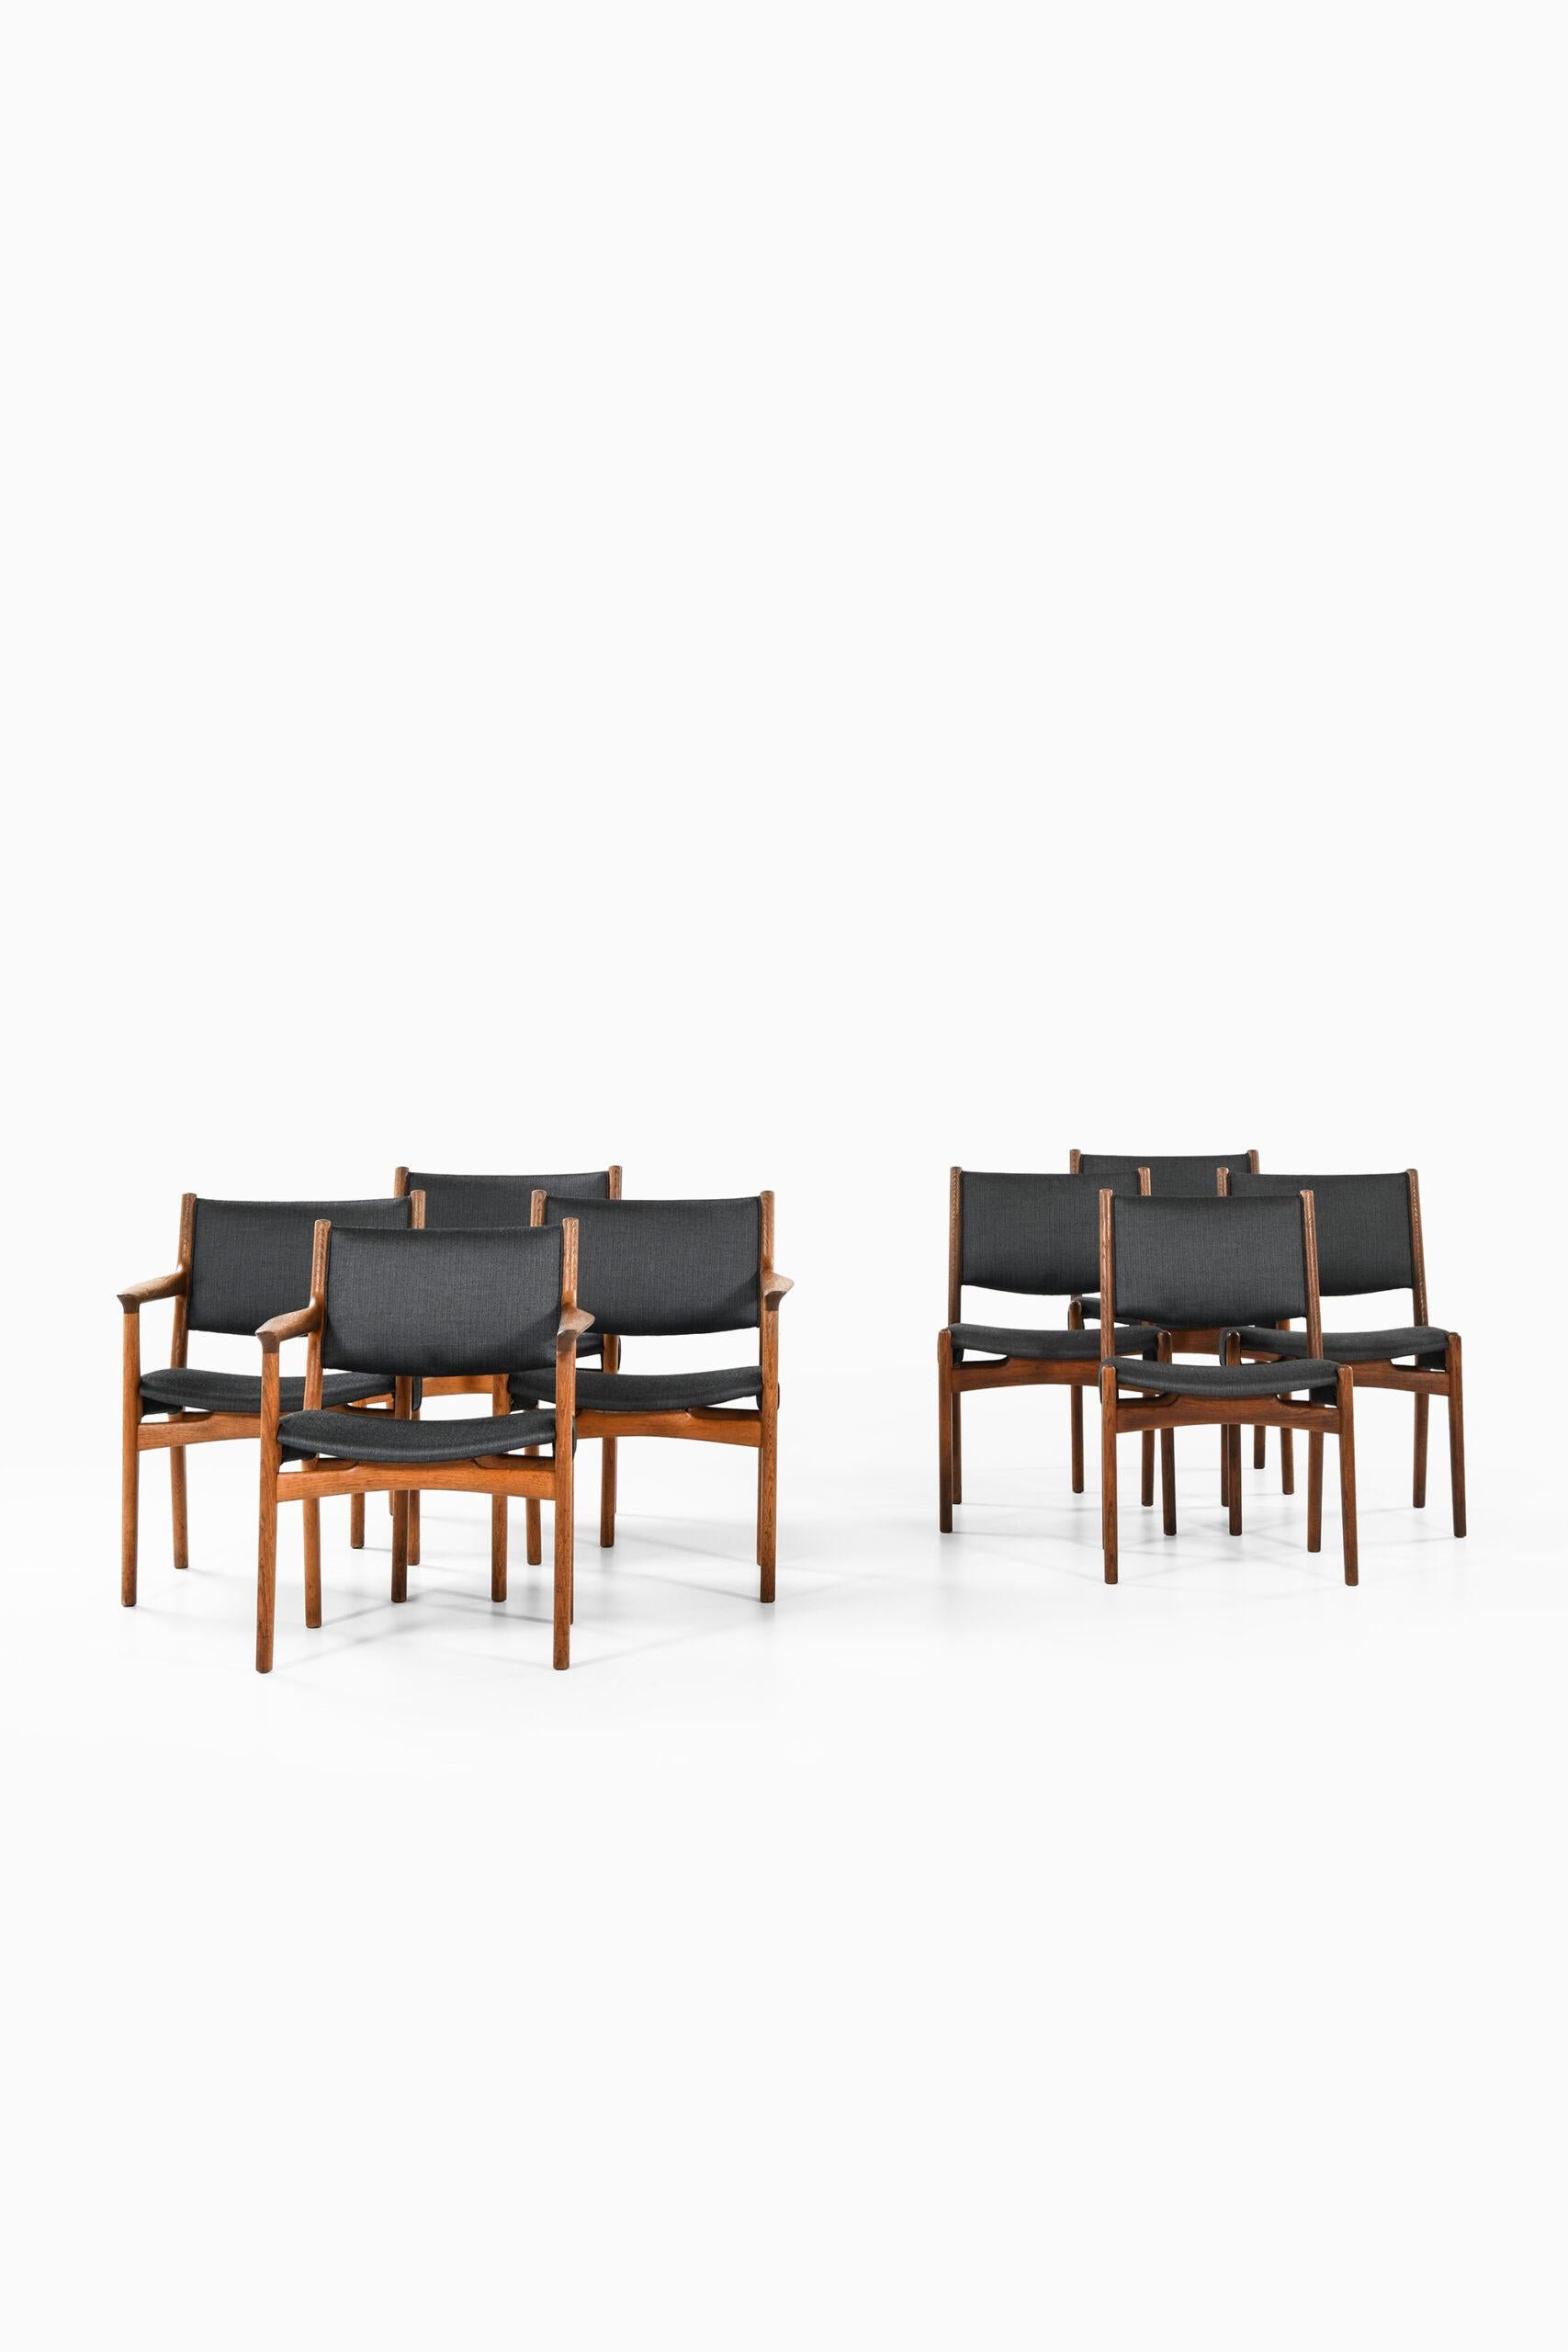 Danish Hans Wegner Dining Chairs by Cabinetmaker Johannes Hansen in Denmark For Sale